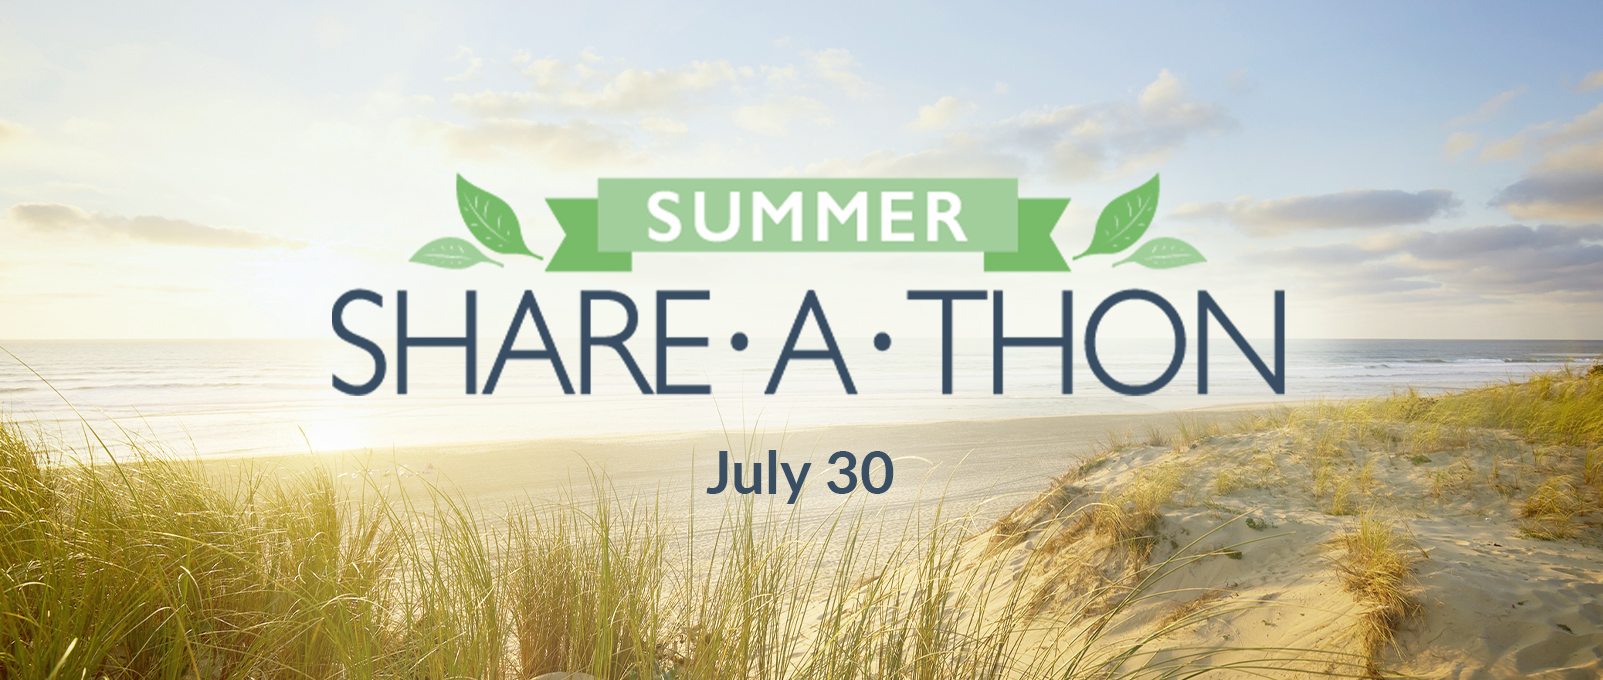 Summer Share-a-thon